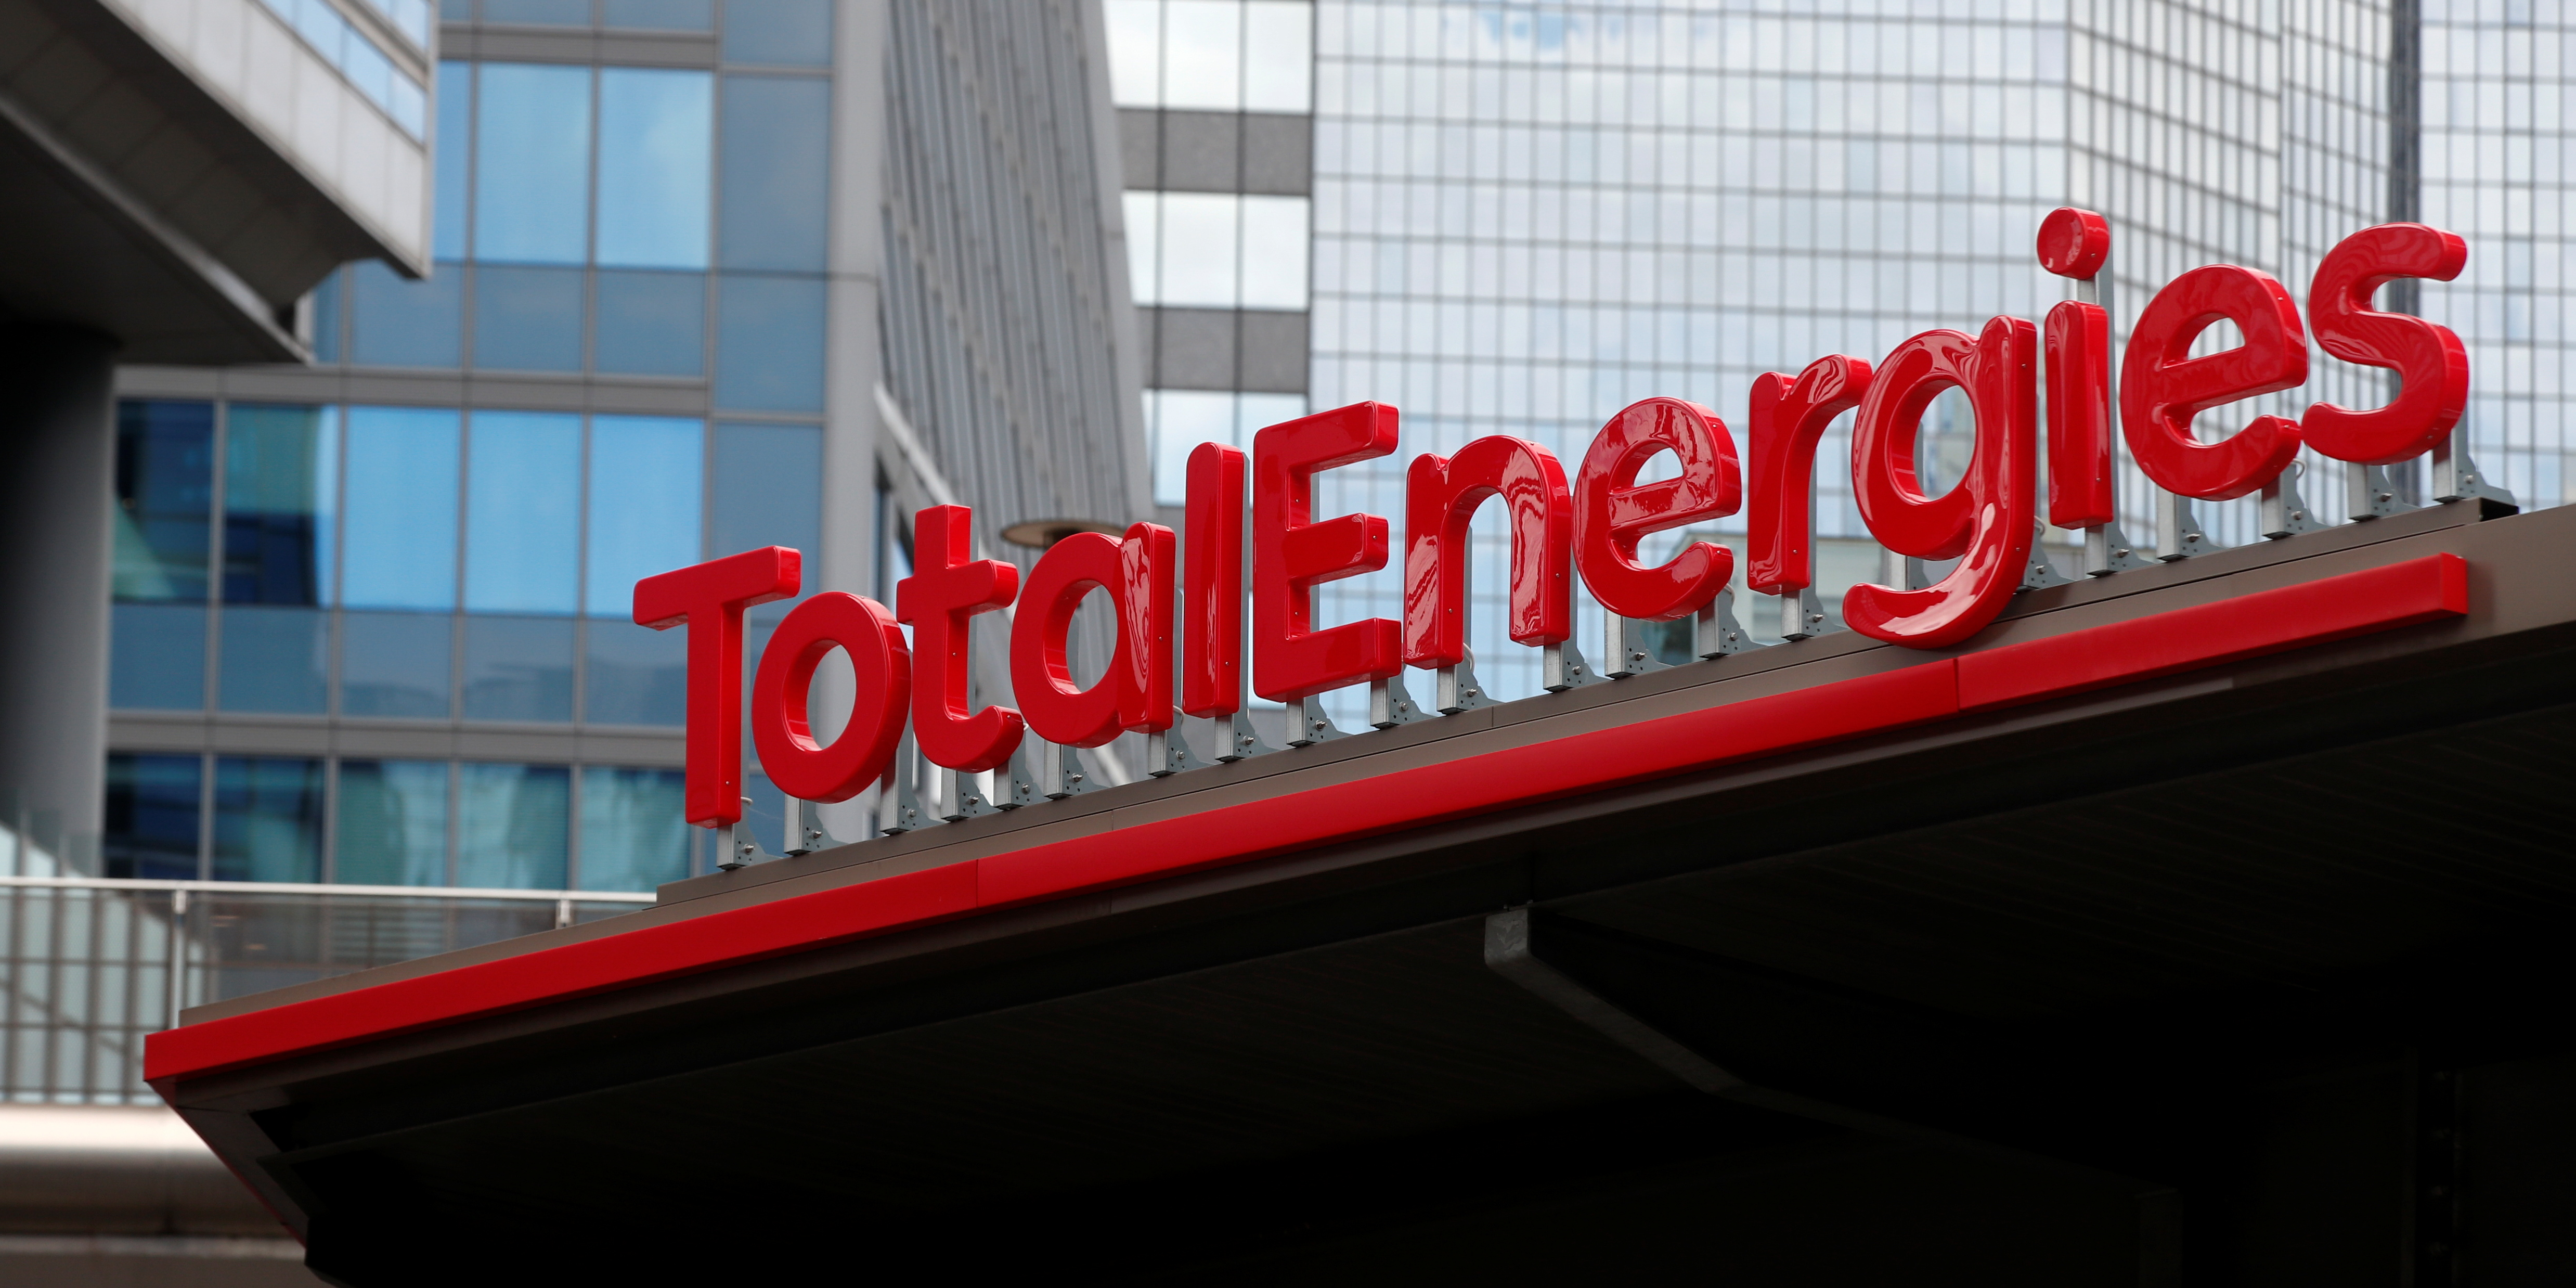 Carburants : à l'appel de Castex, TotalEnergies baisse les prix à la pompe de 10 centimes par litre